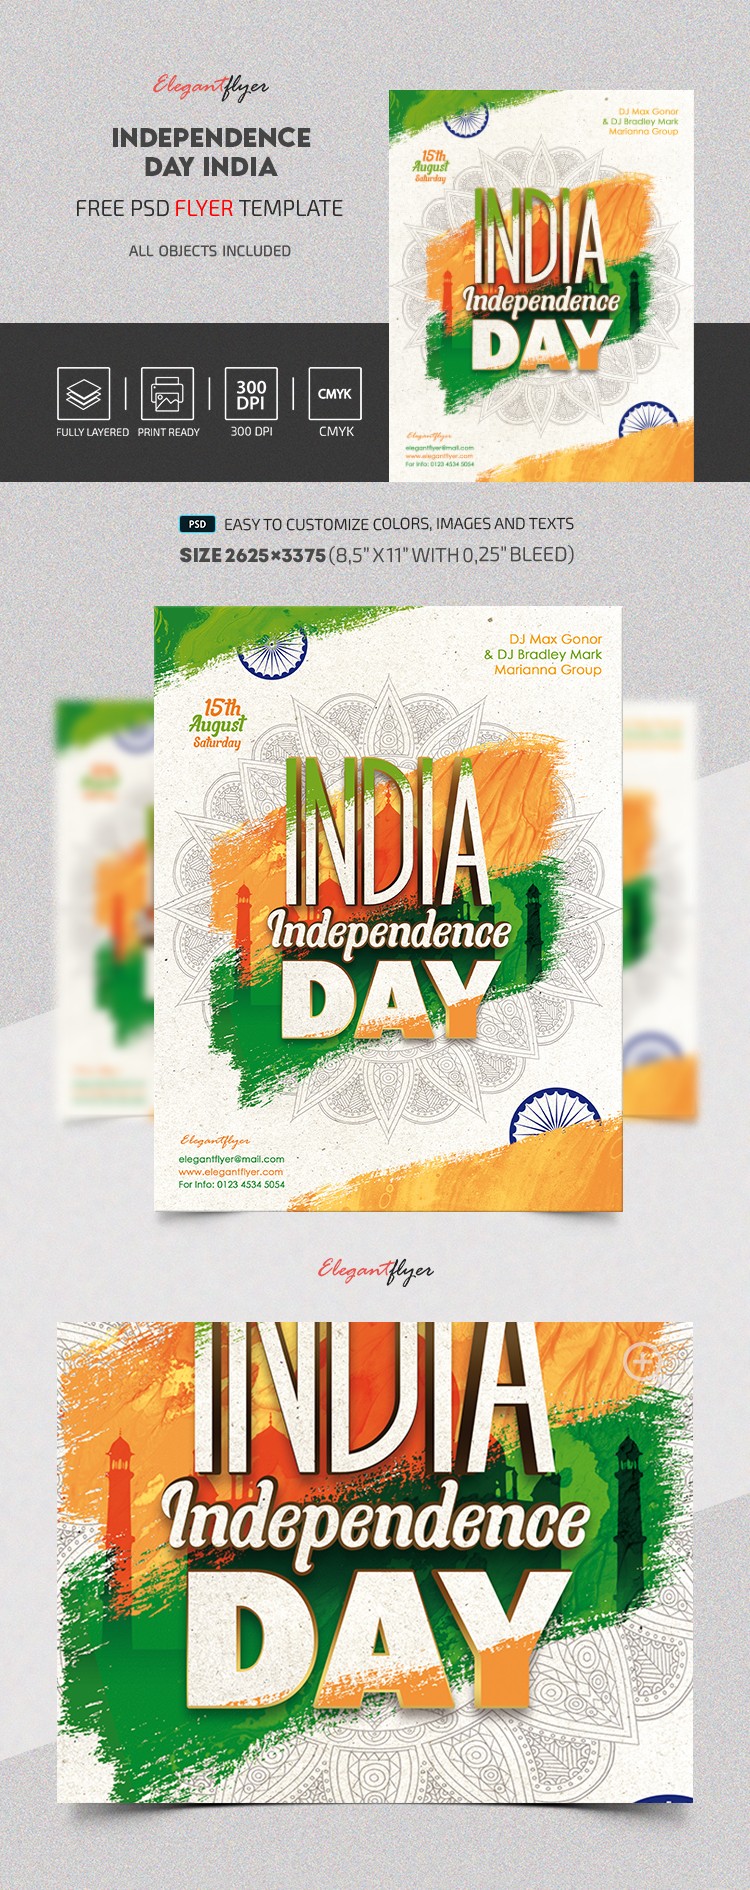 Dzień Niepodległości Indie Lotek by ElegantFlyer